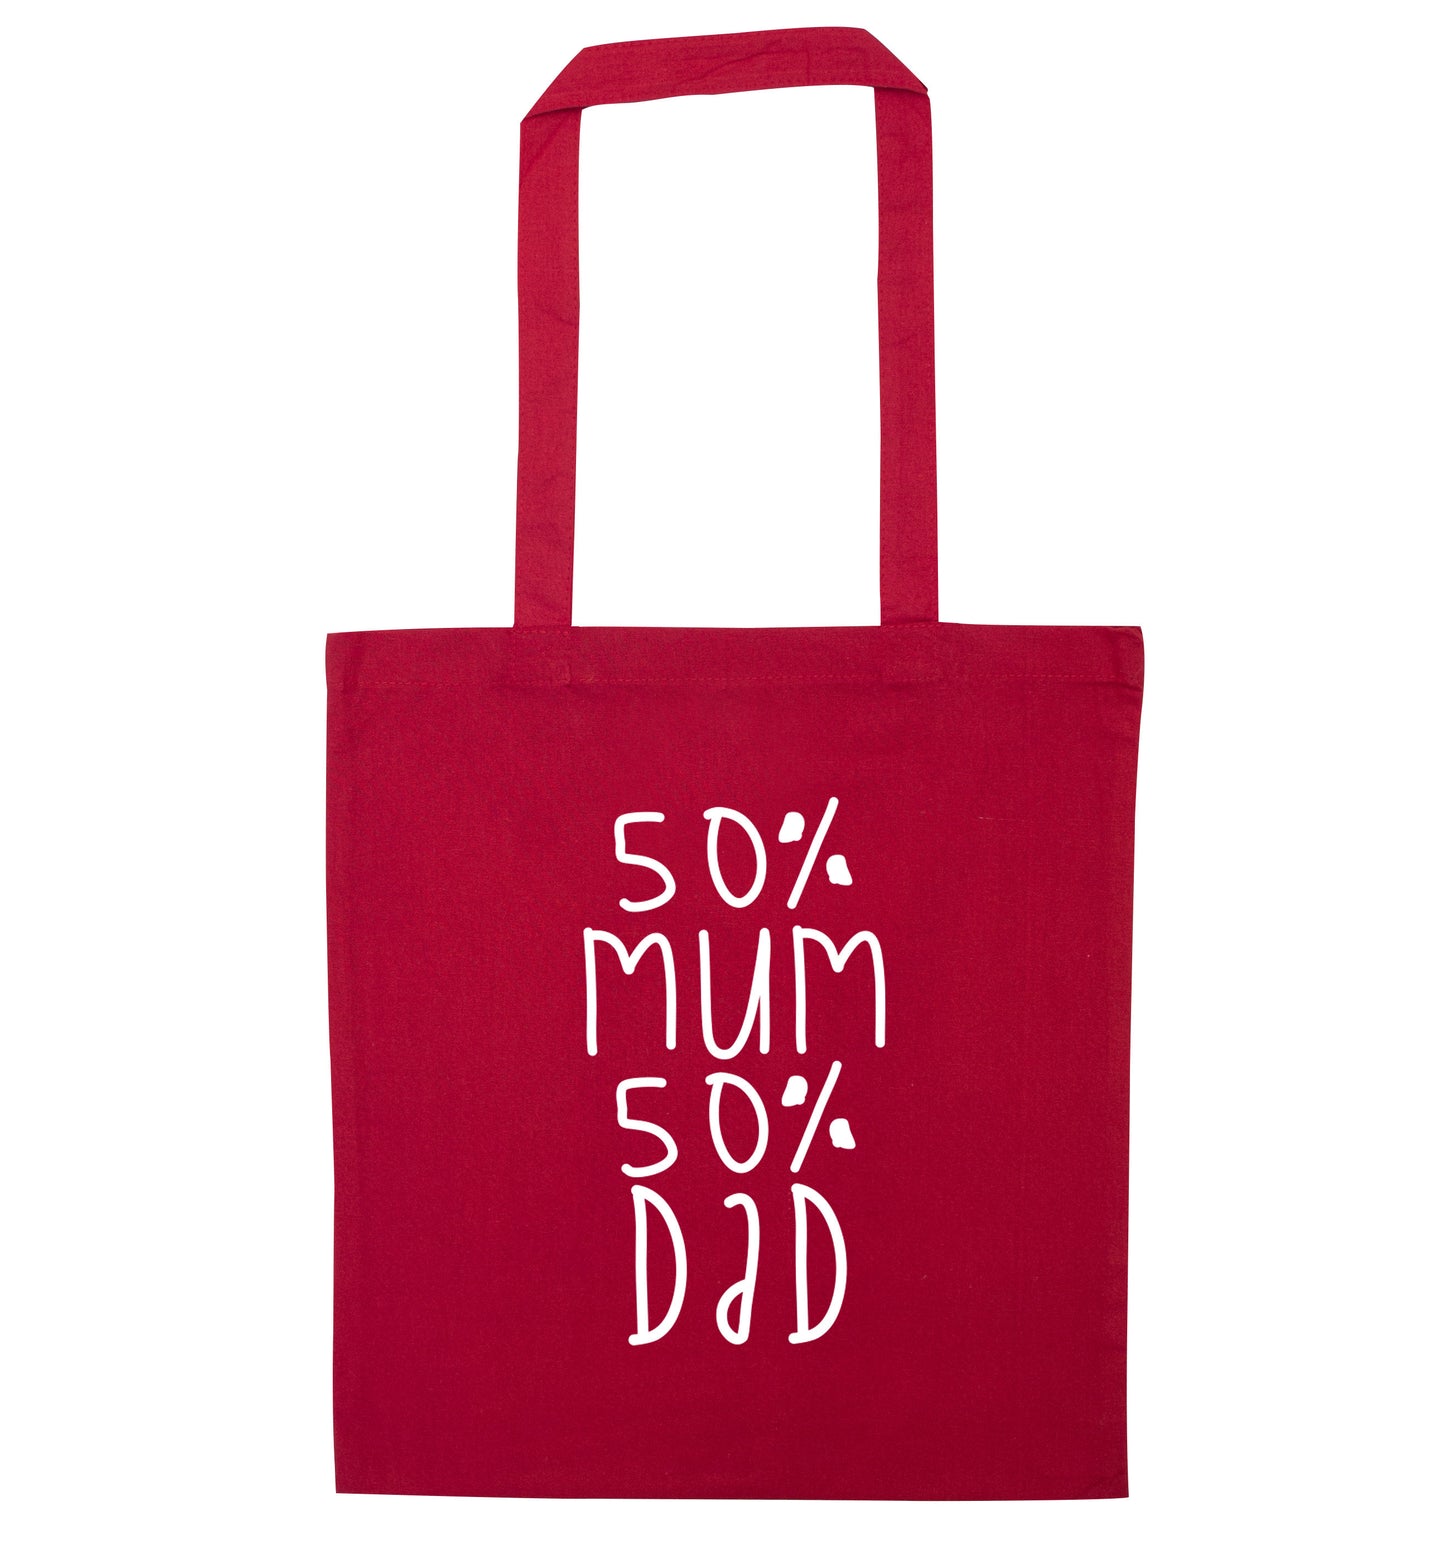 50% mum 50% dad red tote bag